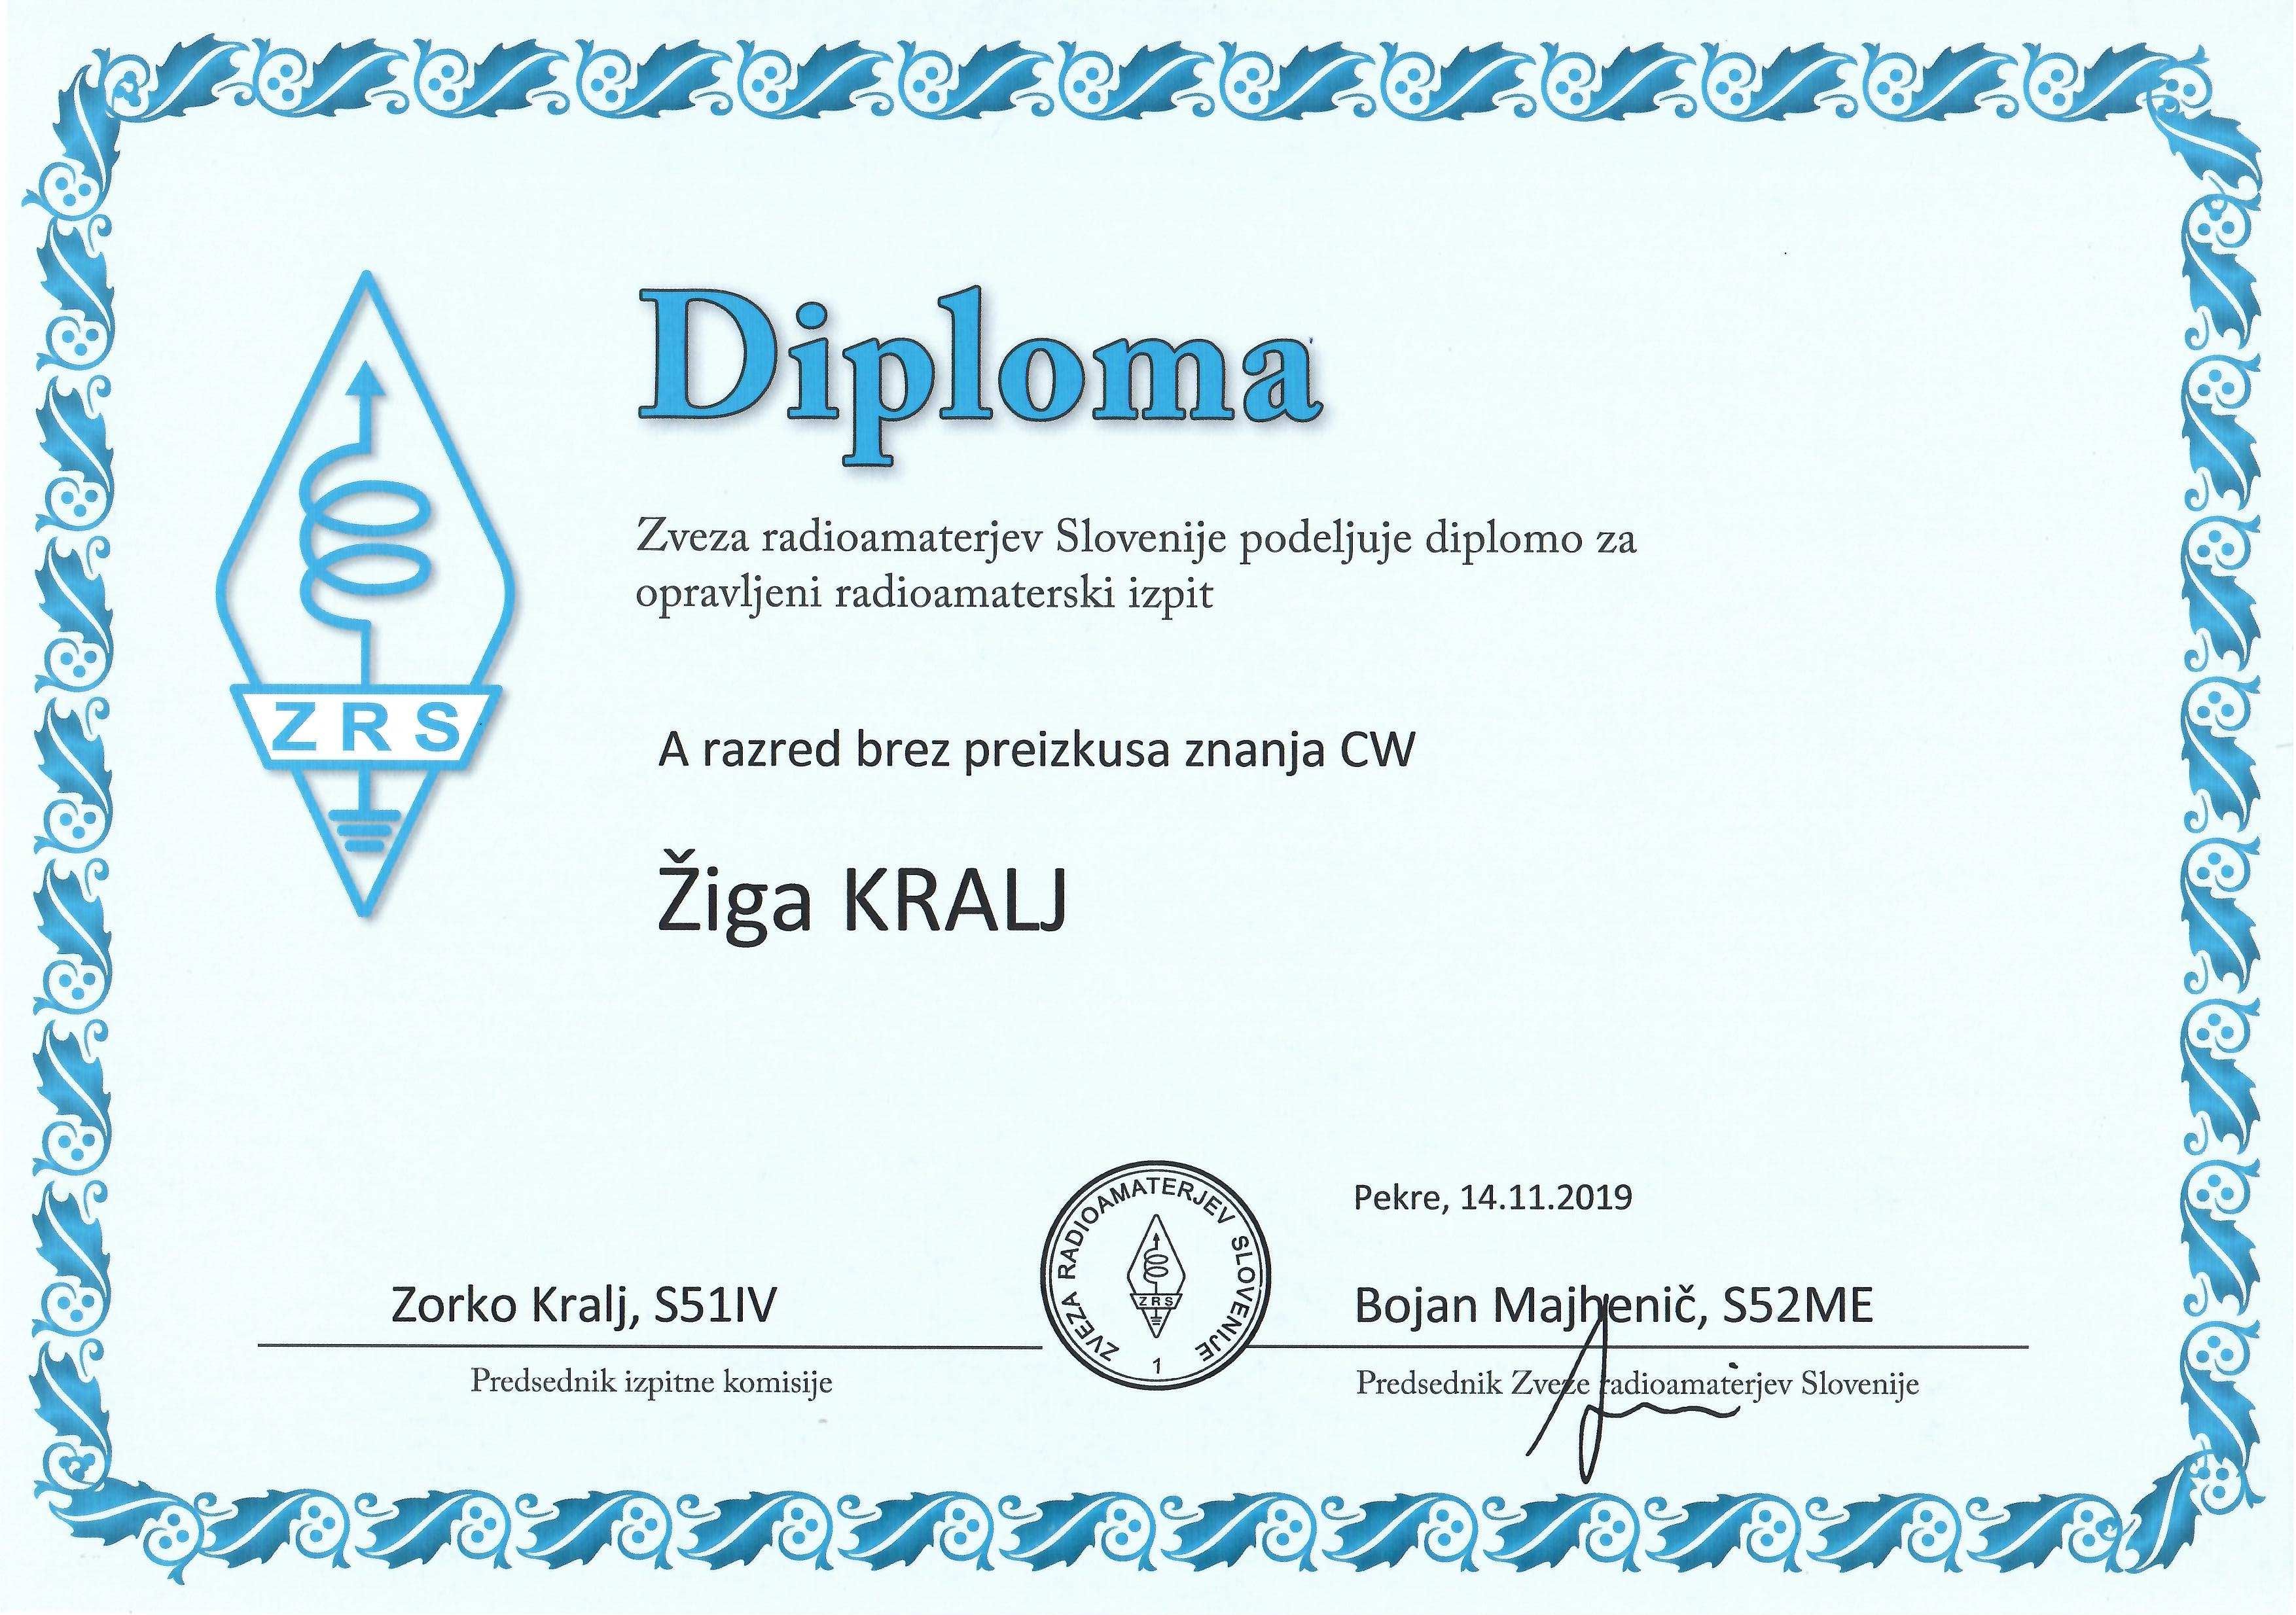 Moja radioamaterska diploma